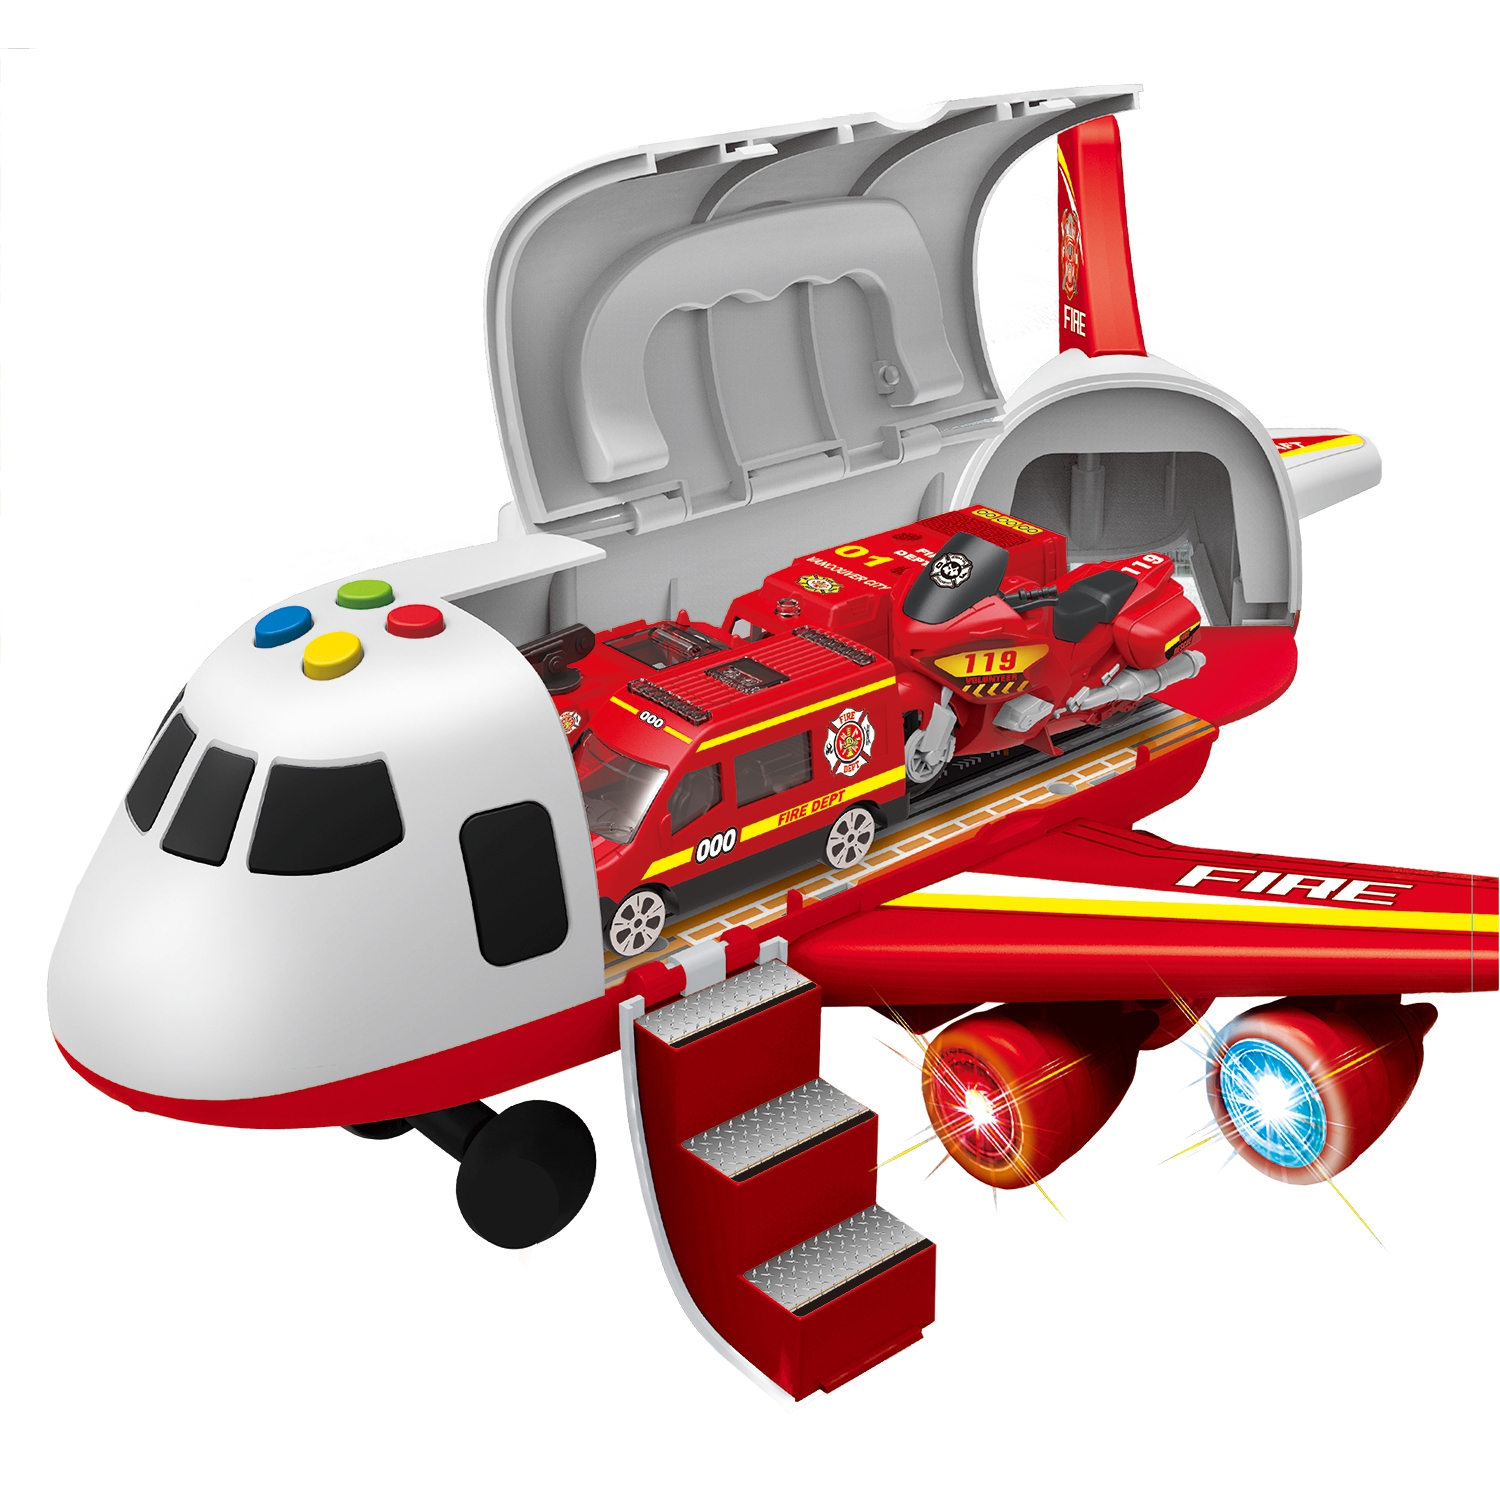 Игрушечный самолет с машинками 1:64 «Fire» 660-A309 / дым, звук, свет